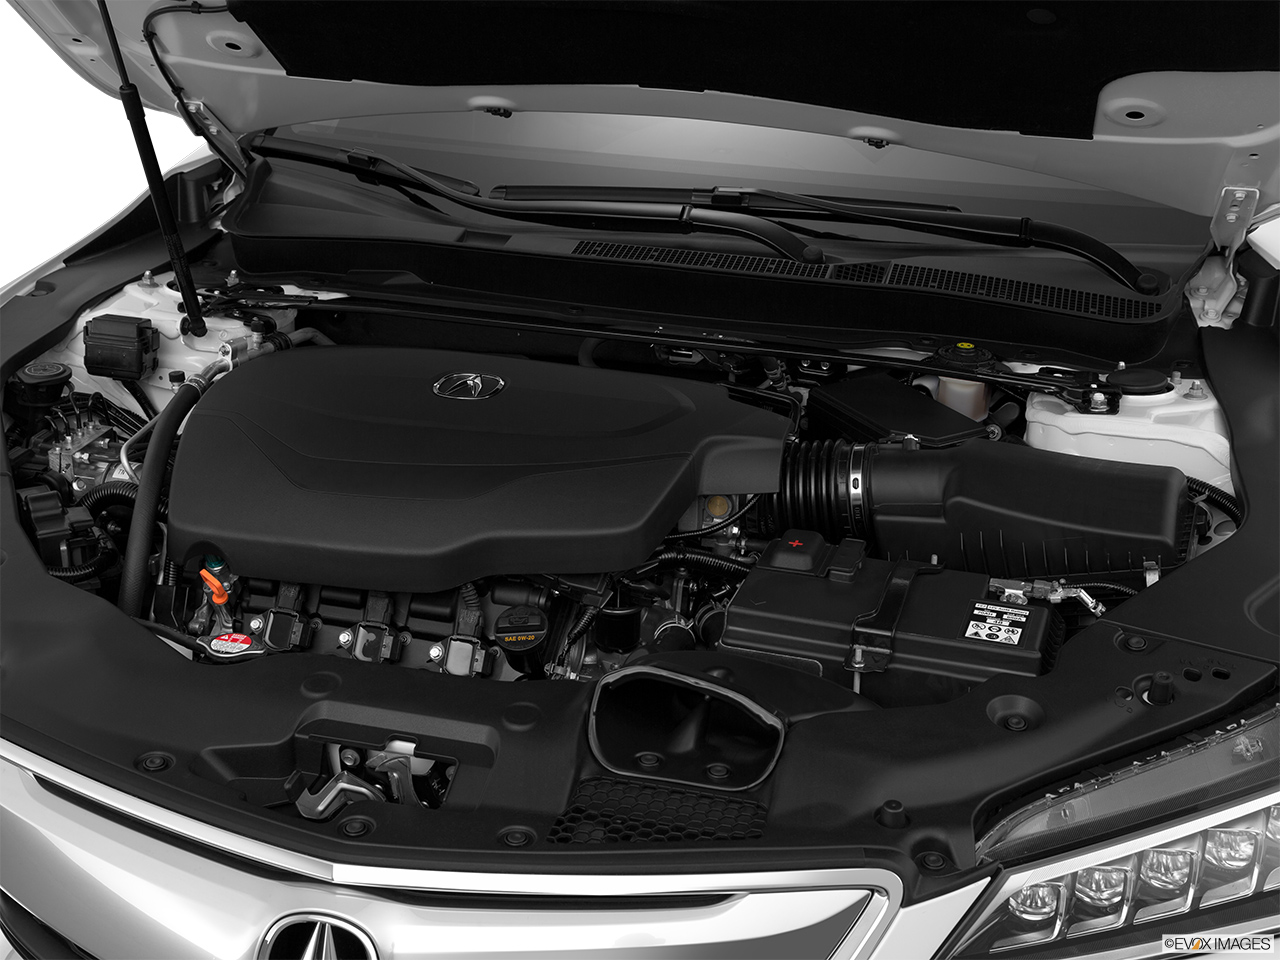 2015 Acura TLX 3.5 V-6 9-AT SH-AWD Engine. 